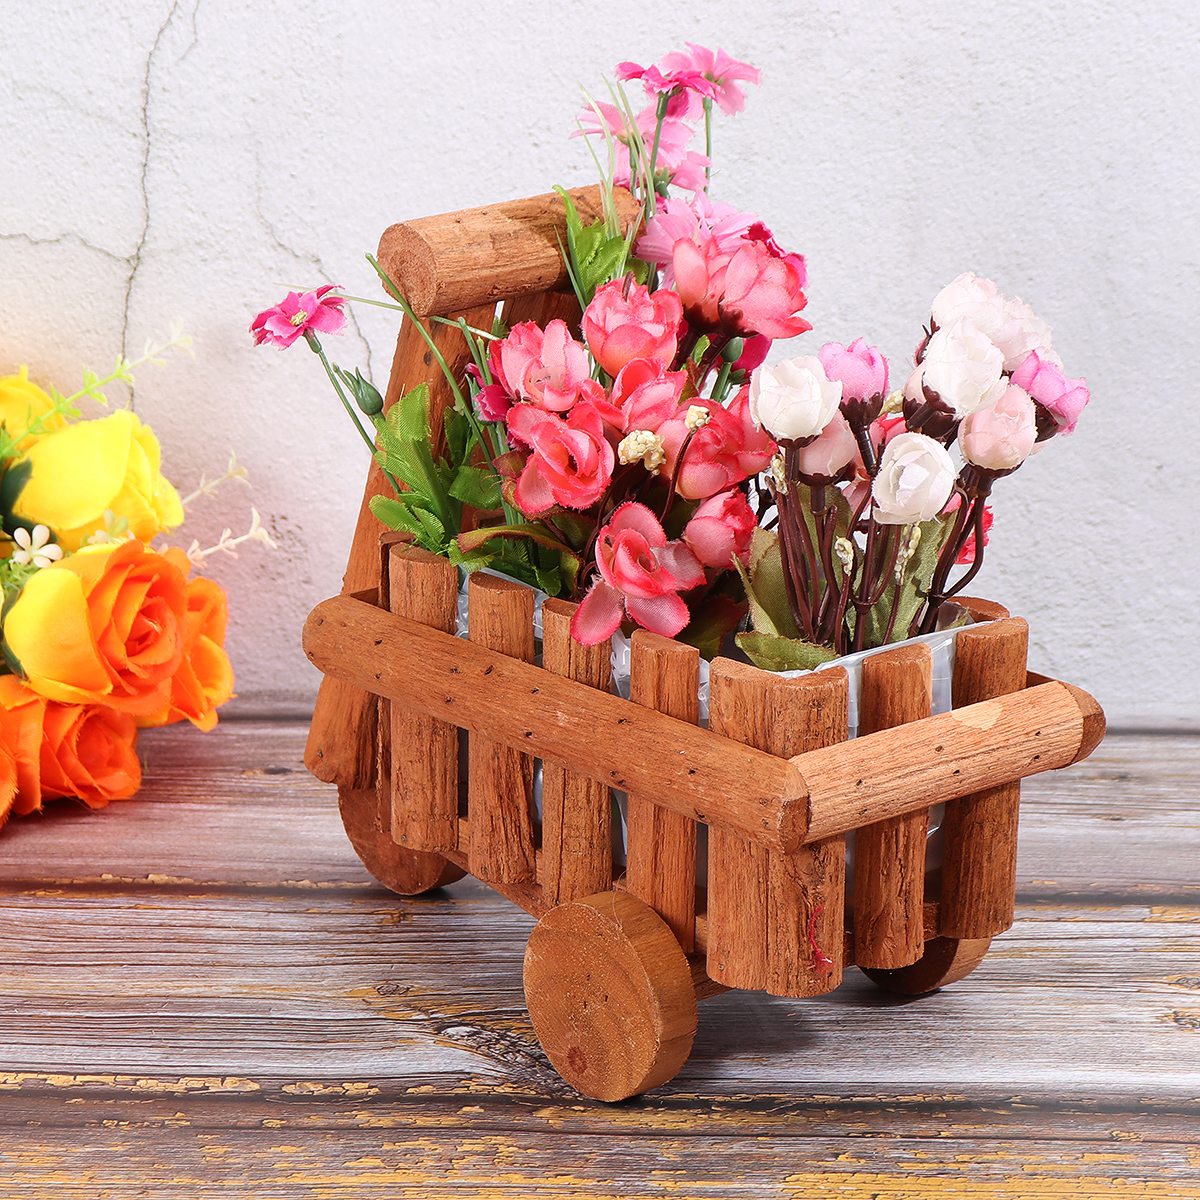 Small-Cart-Flower-Pot-Wooden-Wheelbarrow-Planter-Succulent-Container-Ornament-1727273-2